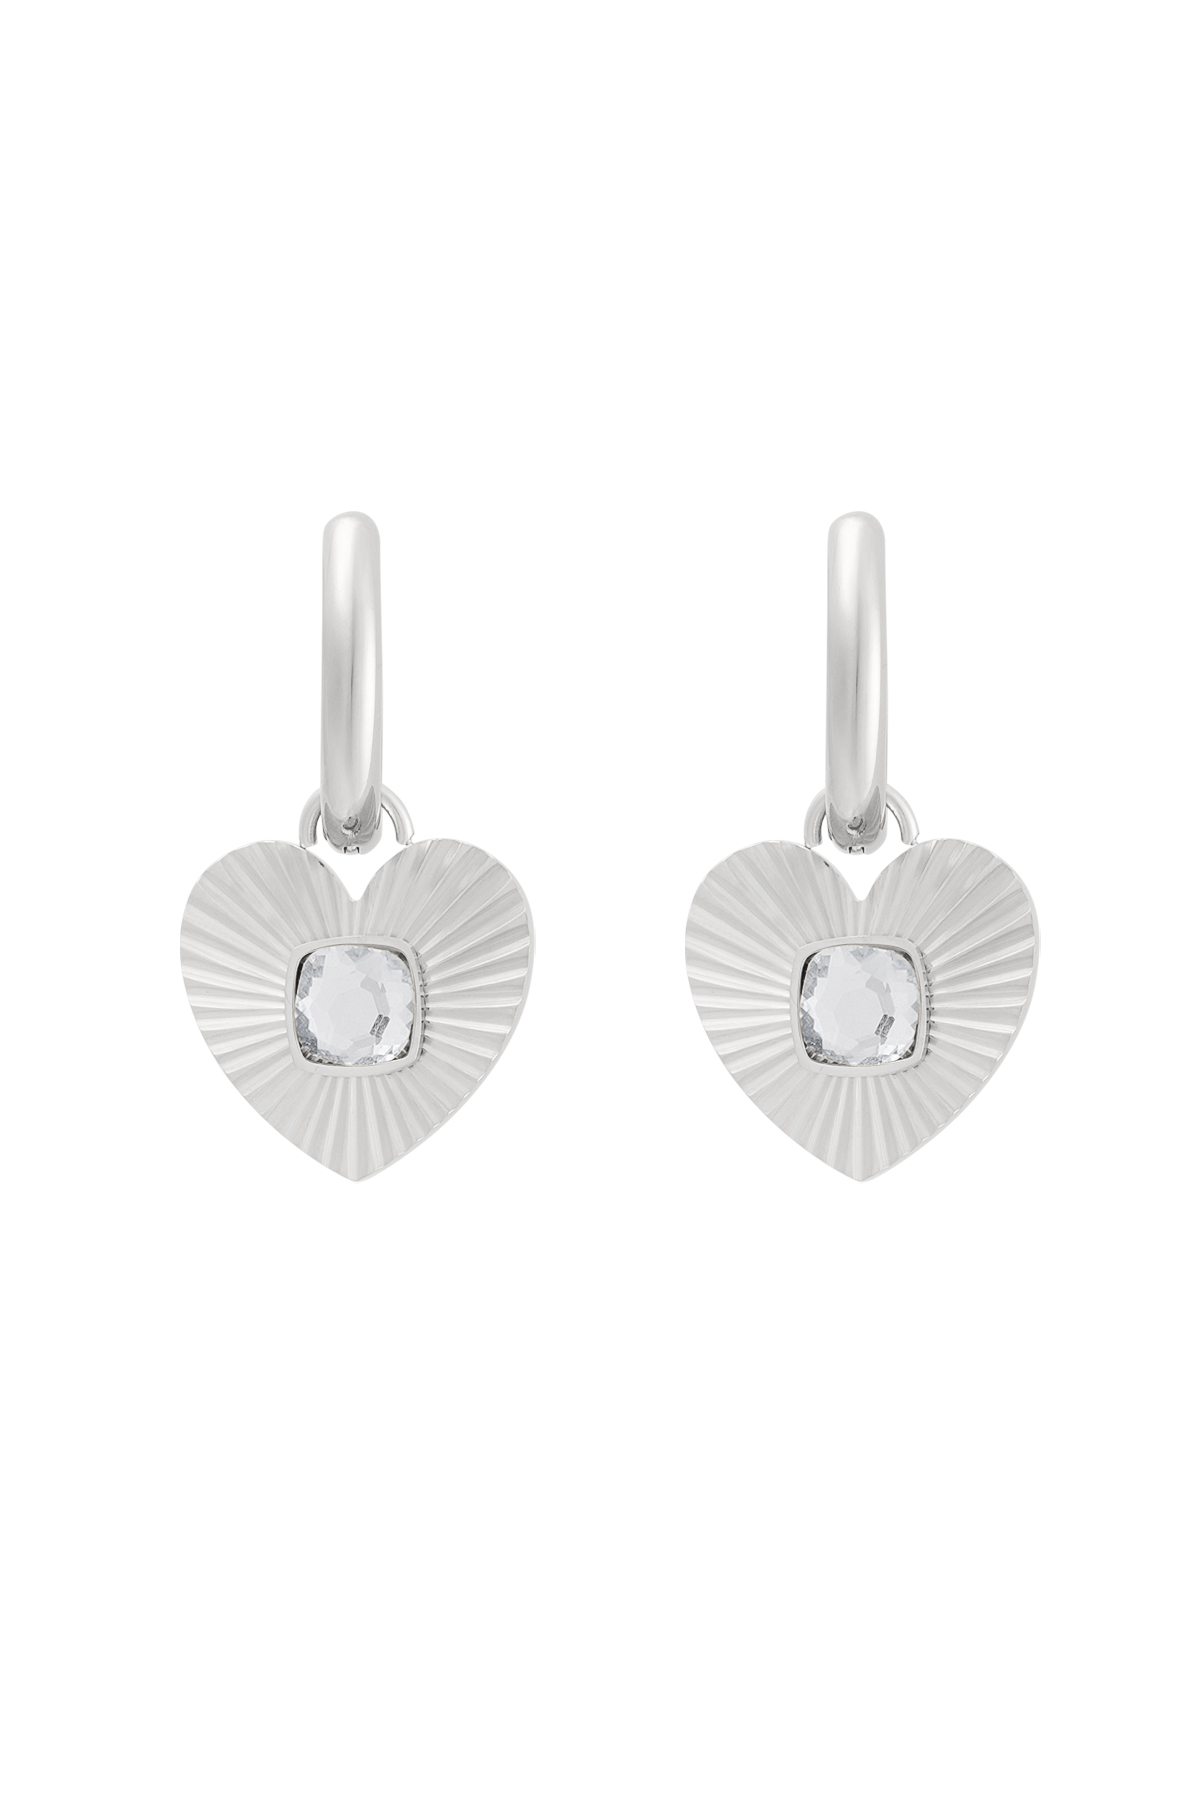 Ohrringe Herz mit Stein - Silber/Weiß